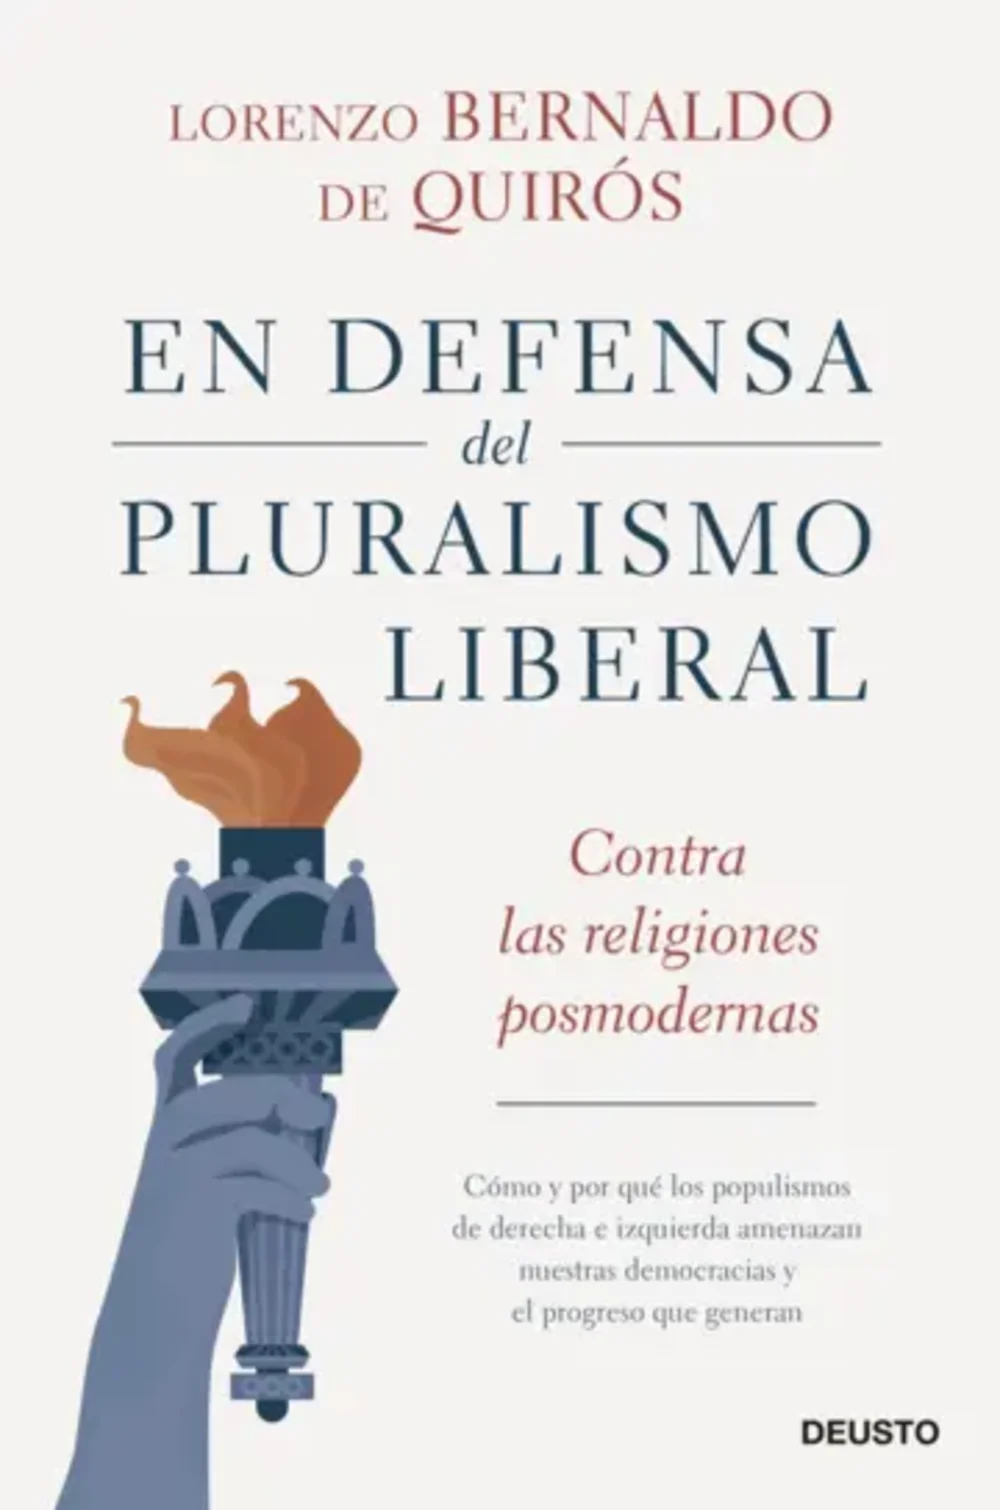 En defensa del pluralismo liberalBernaldo de Quirós, Lorenzo